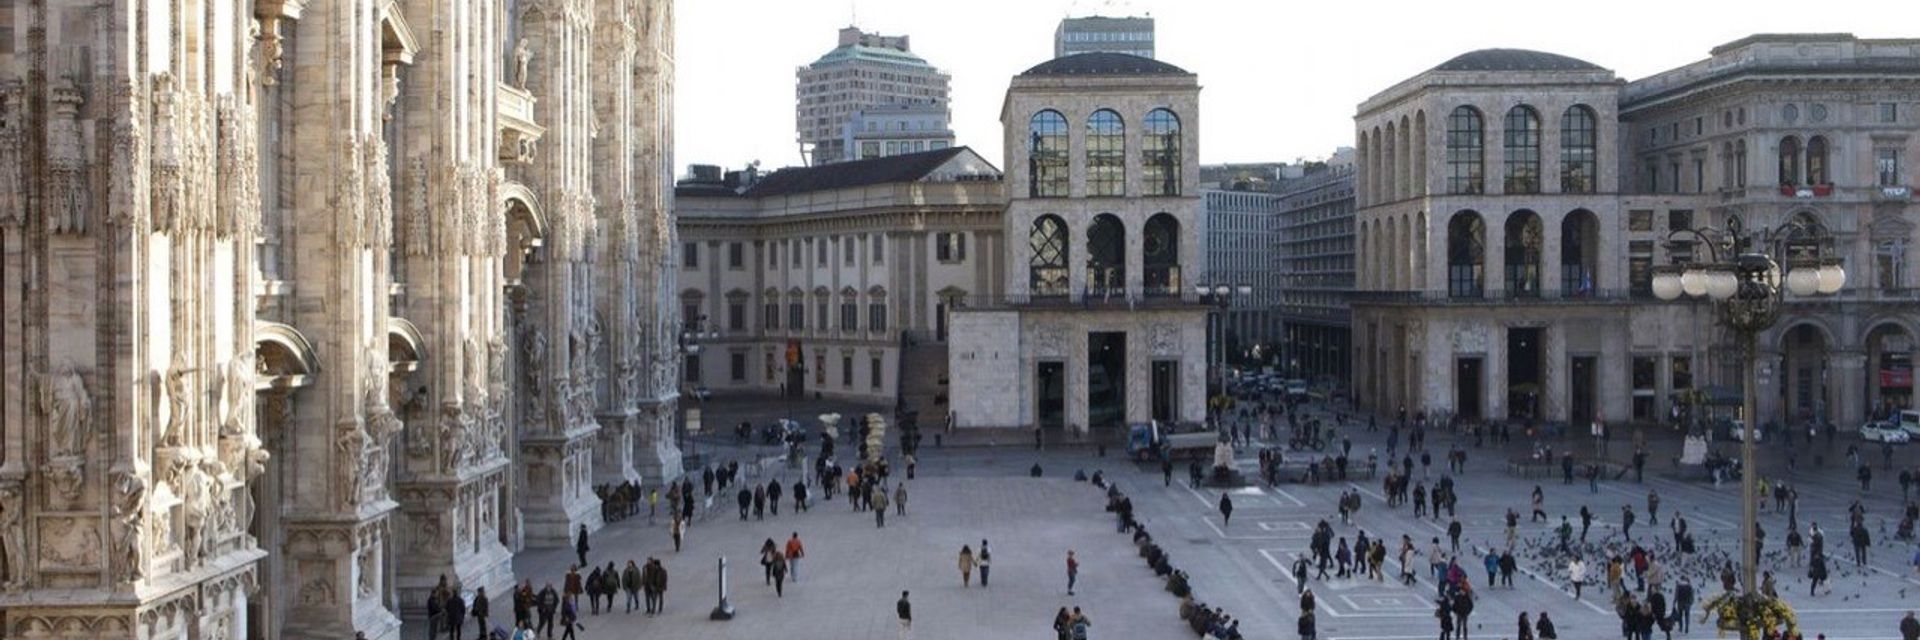 Museo del Novecento di Milano